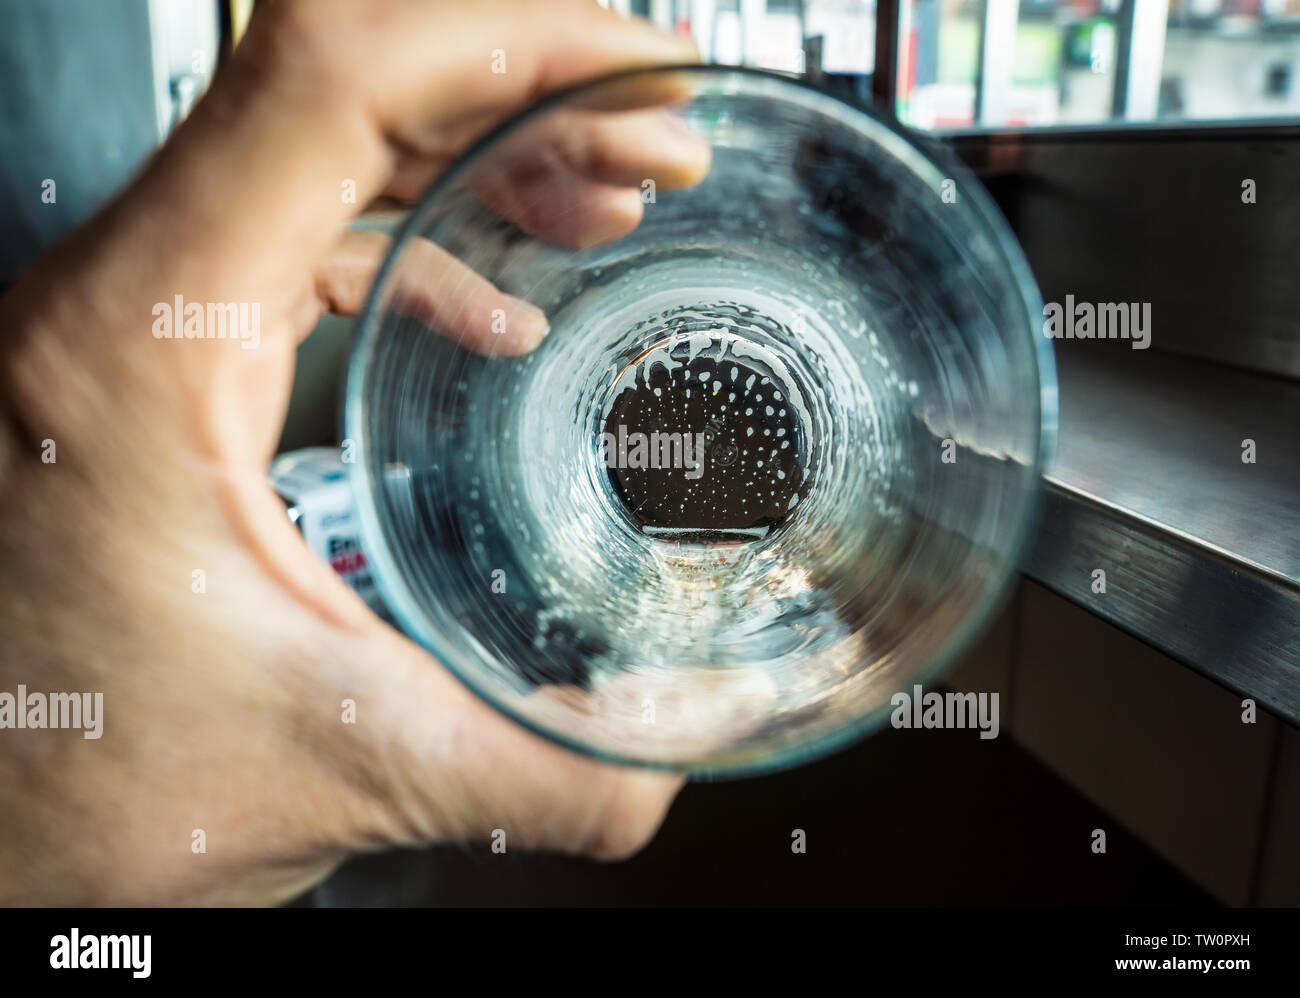 Imagen conceptual de un vaso de cerveza vacías en el alcoholismo y la idea de la vacuidad de la vida del uso indebido de drogas Foto de stock